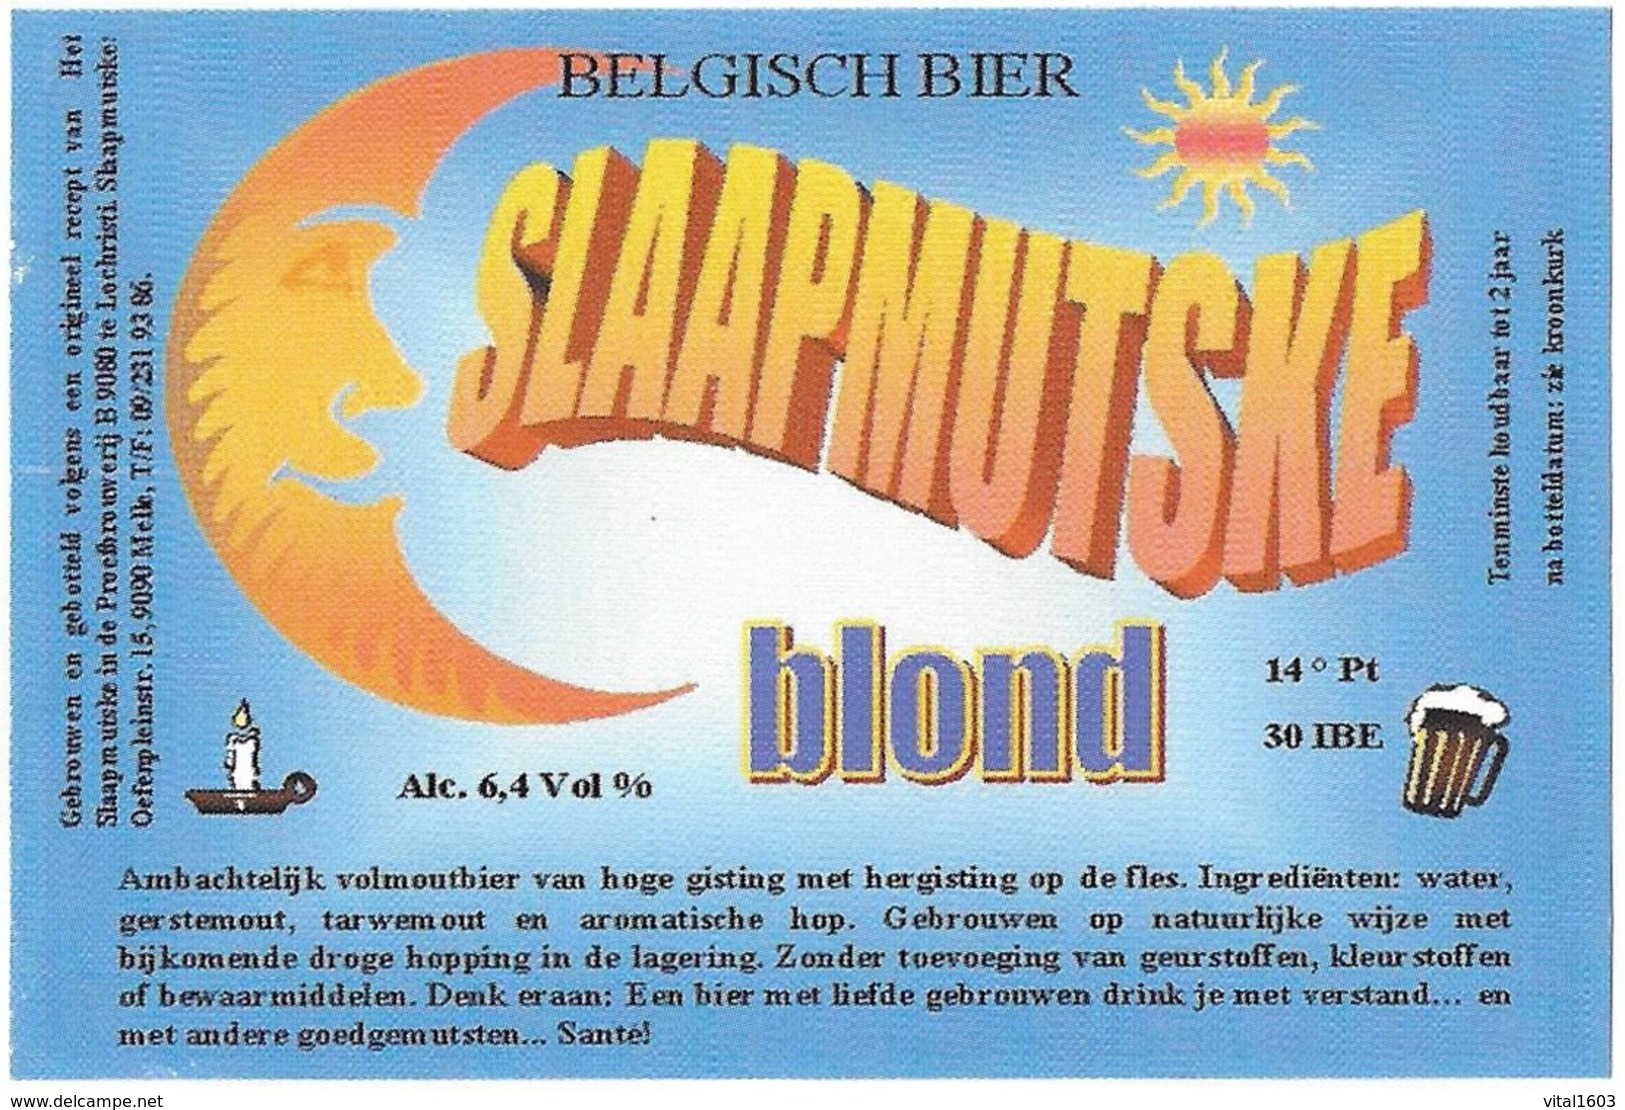 Beerlabel Belgium 56 - Beer